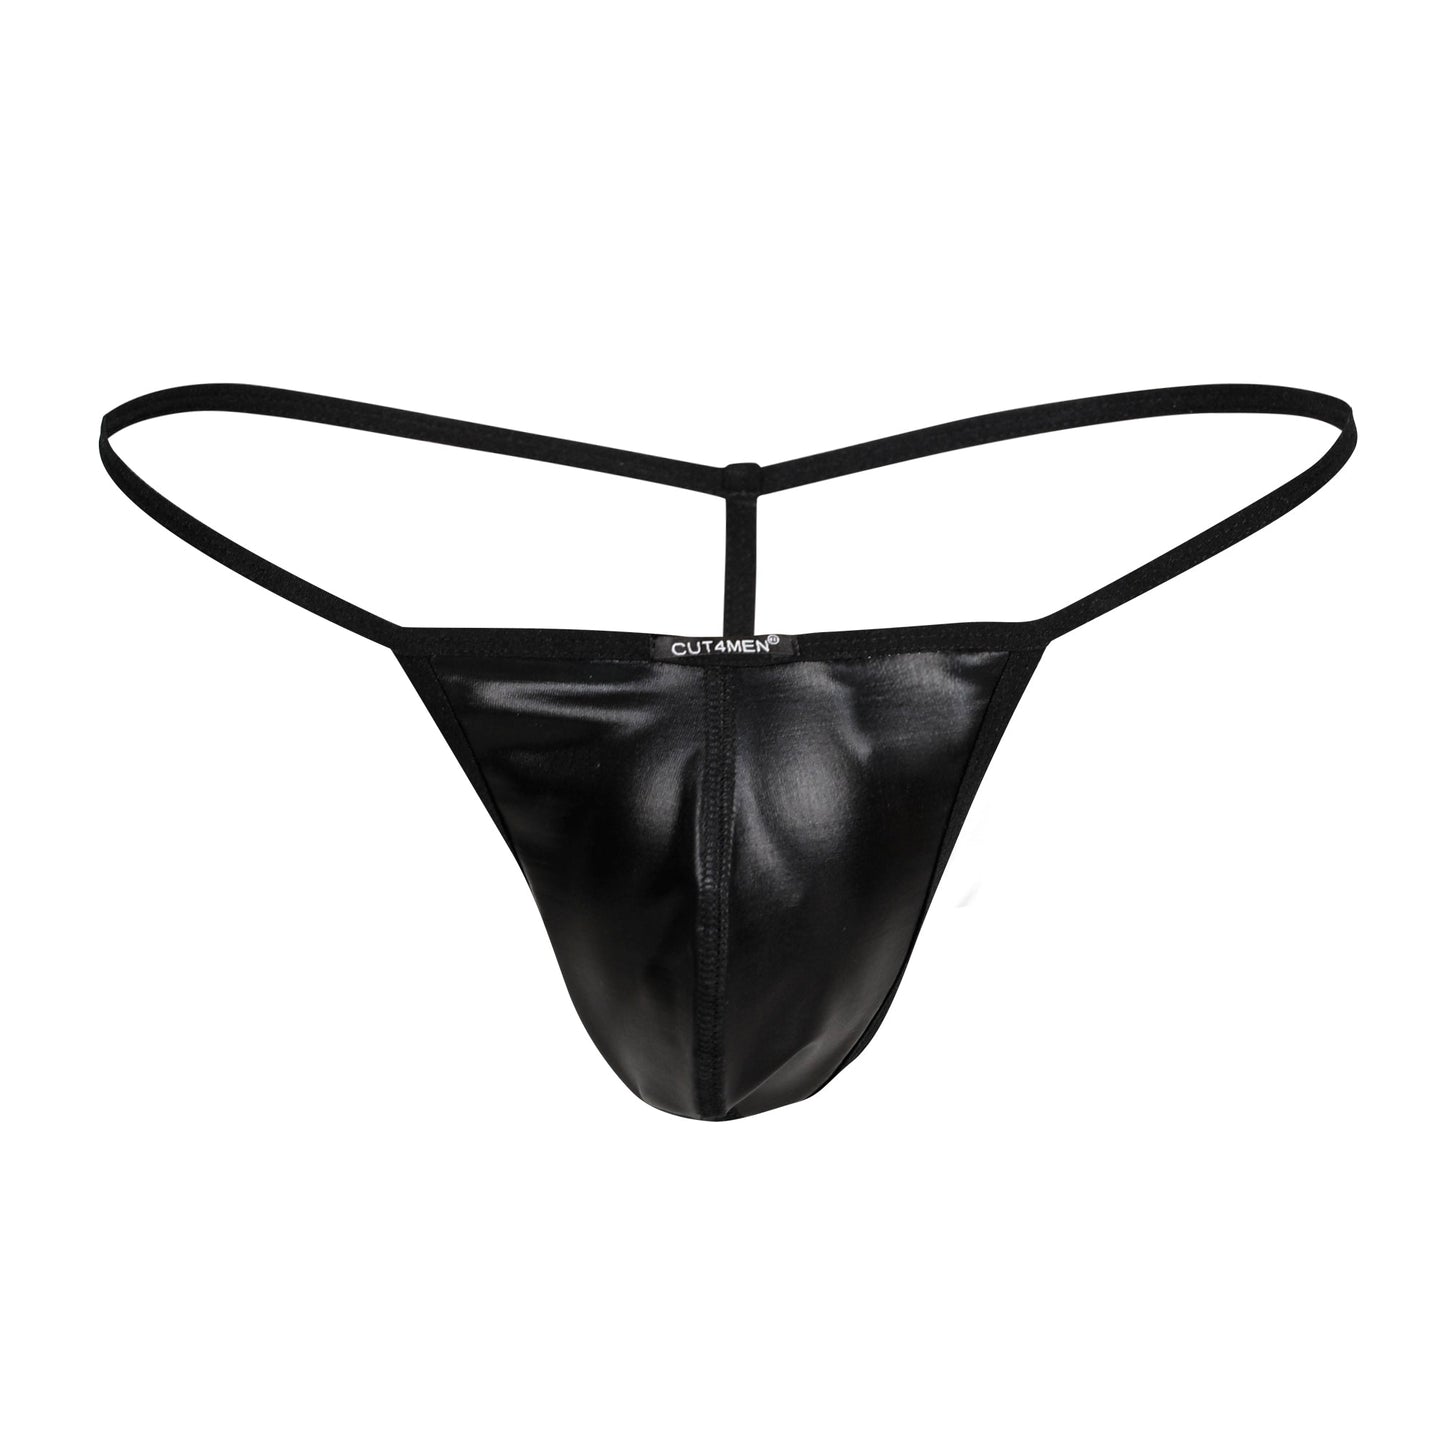 CUT4MEN - C4M02 - Wetlook G String Men Underwear - Black -4 SIzes - 1 Piece